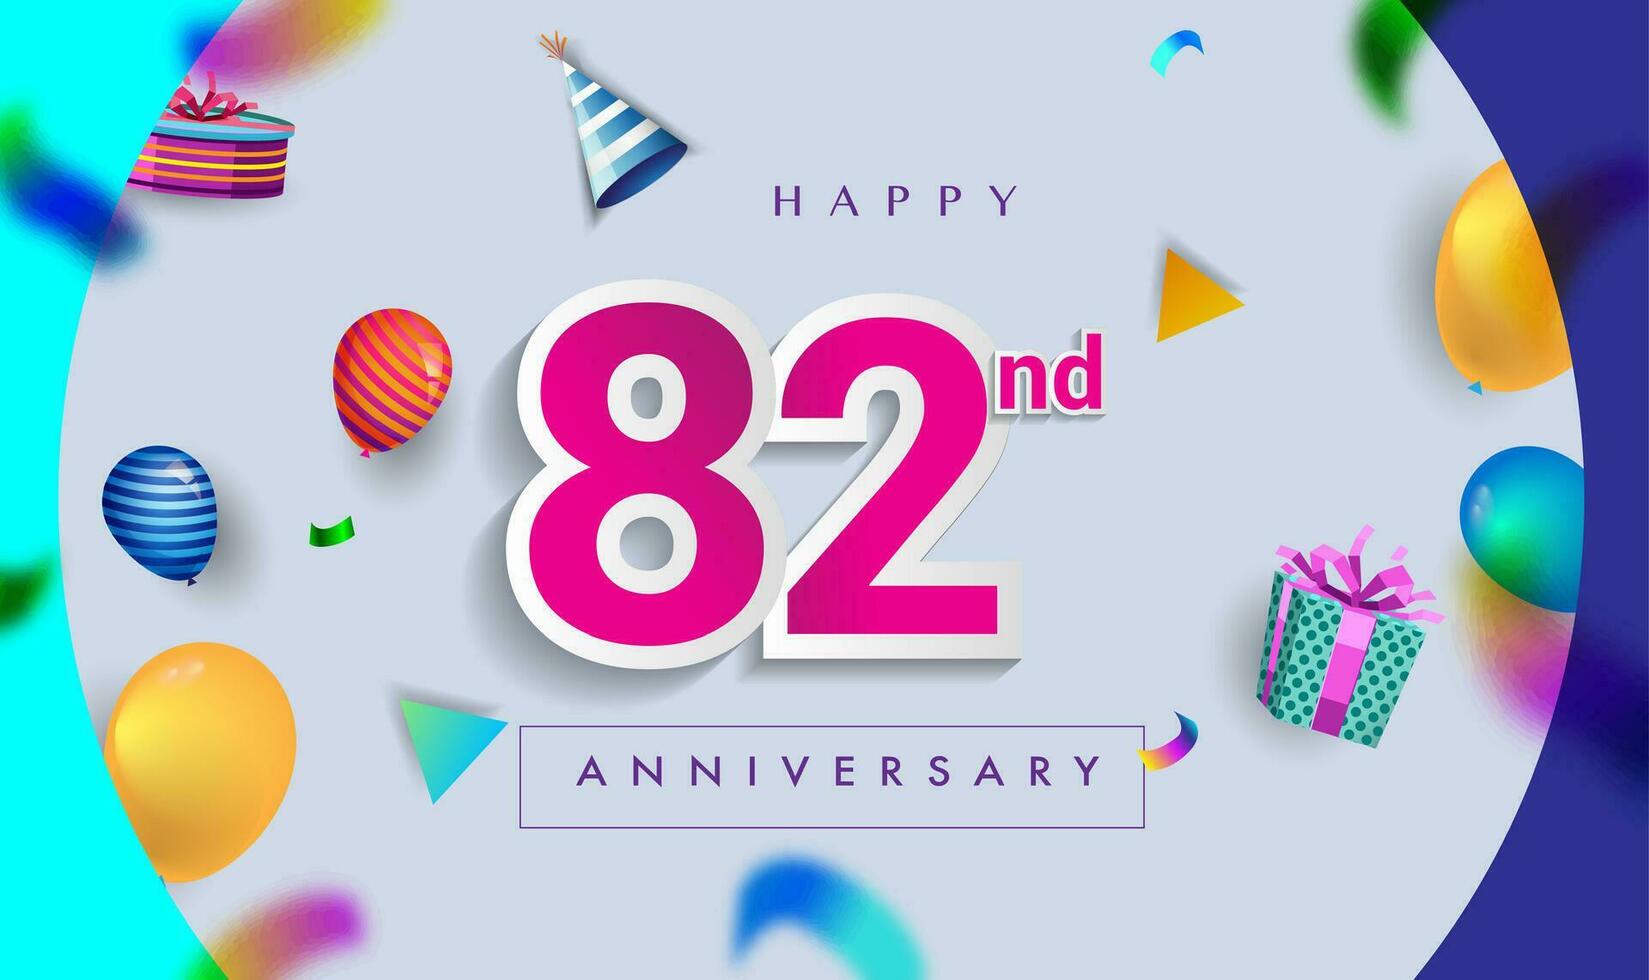 82ste jaren verjaardag viering ontwerp, met geschenk doos en ballonnen, lint, kleurrijk vector sjabloon elementen voor uw verjaardag vieren feest.